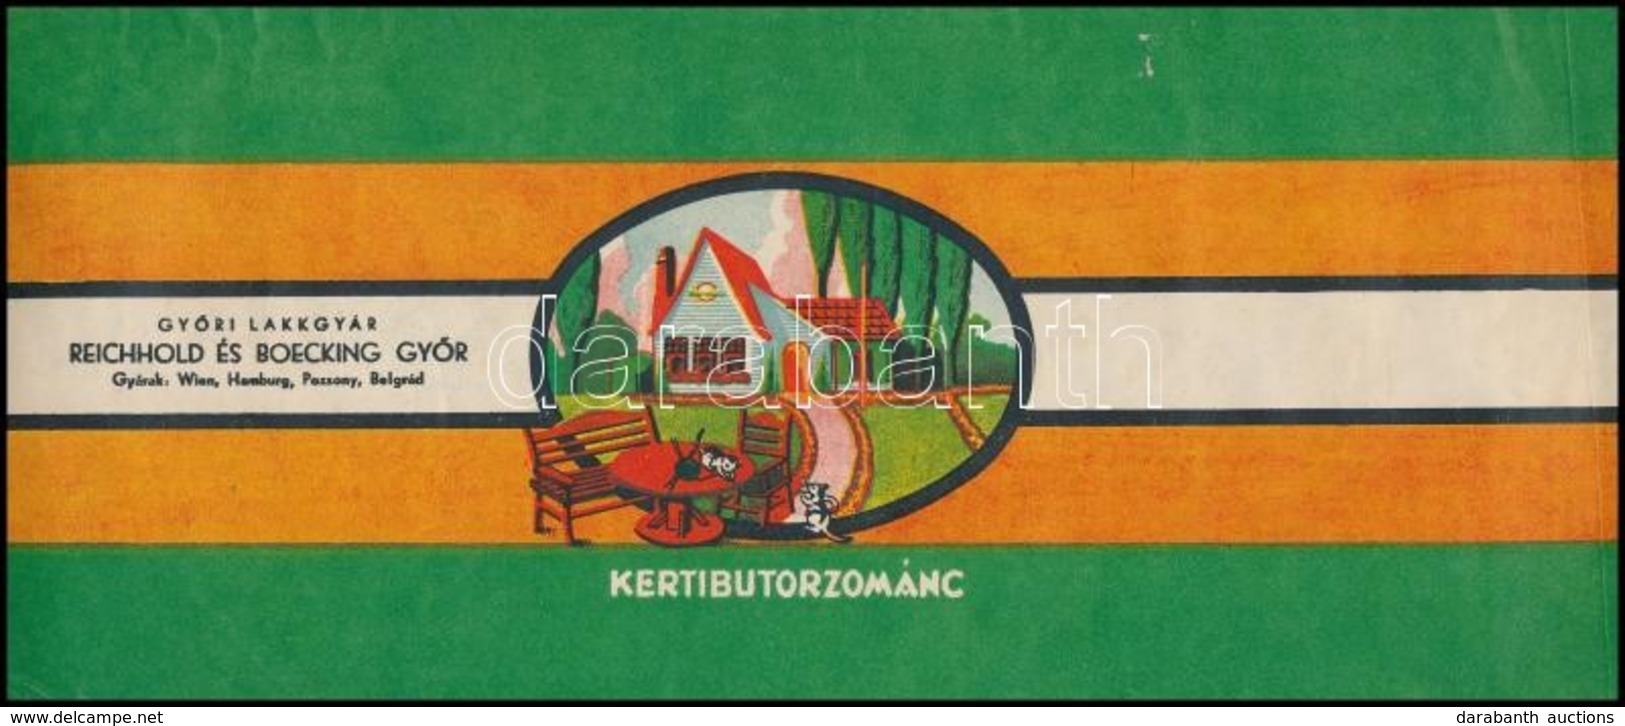 Kerti Bútor Zománc - Győri Lakkgyár Reichhold és Boecking Győr Címke - Publicidad